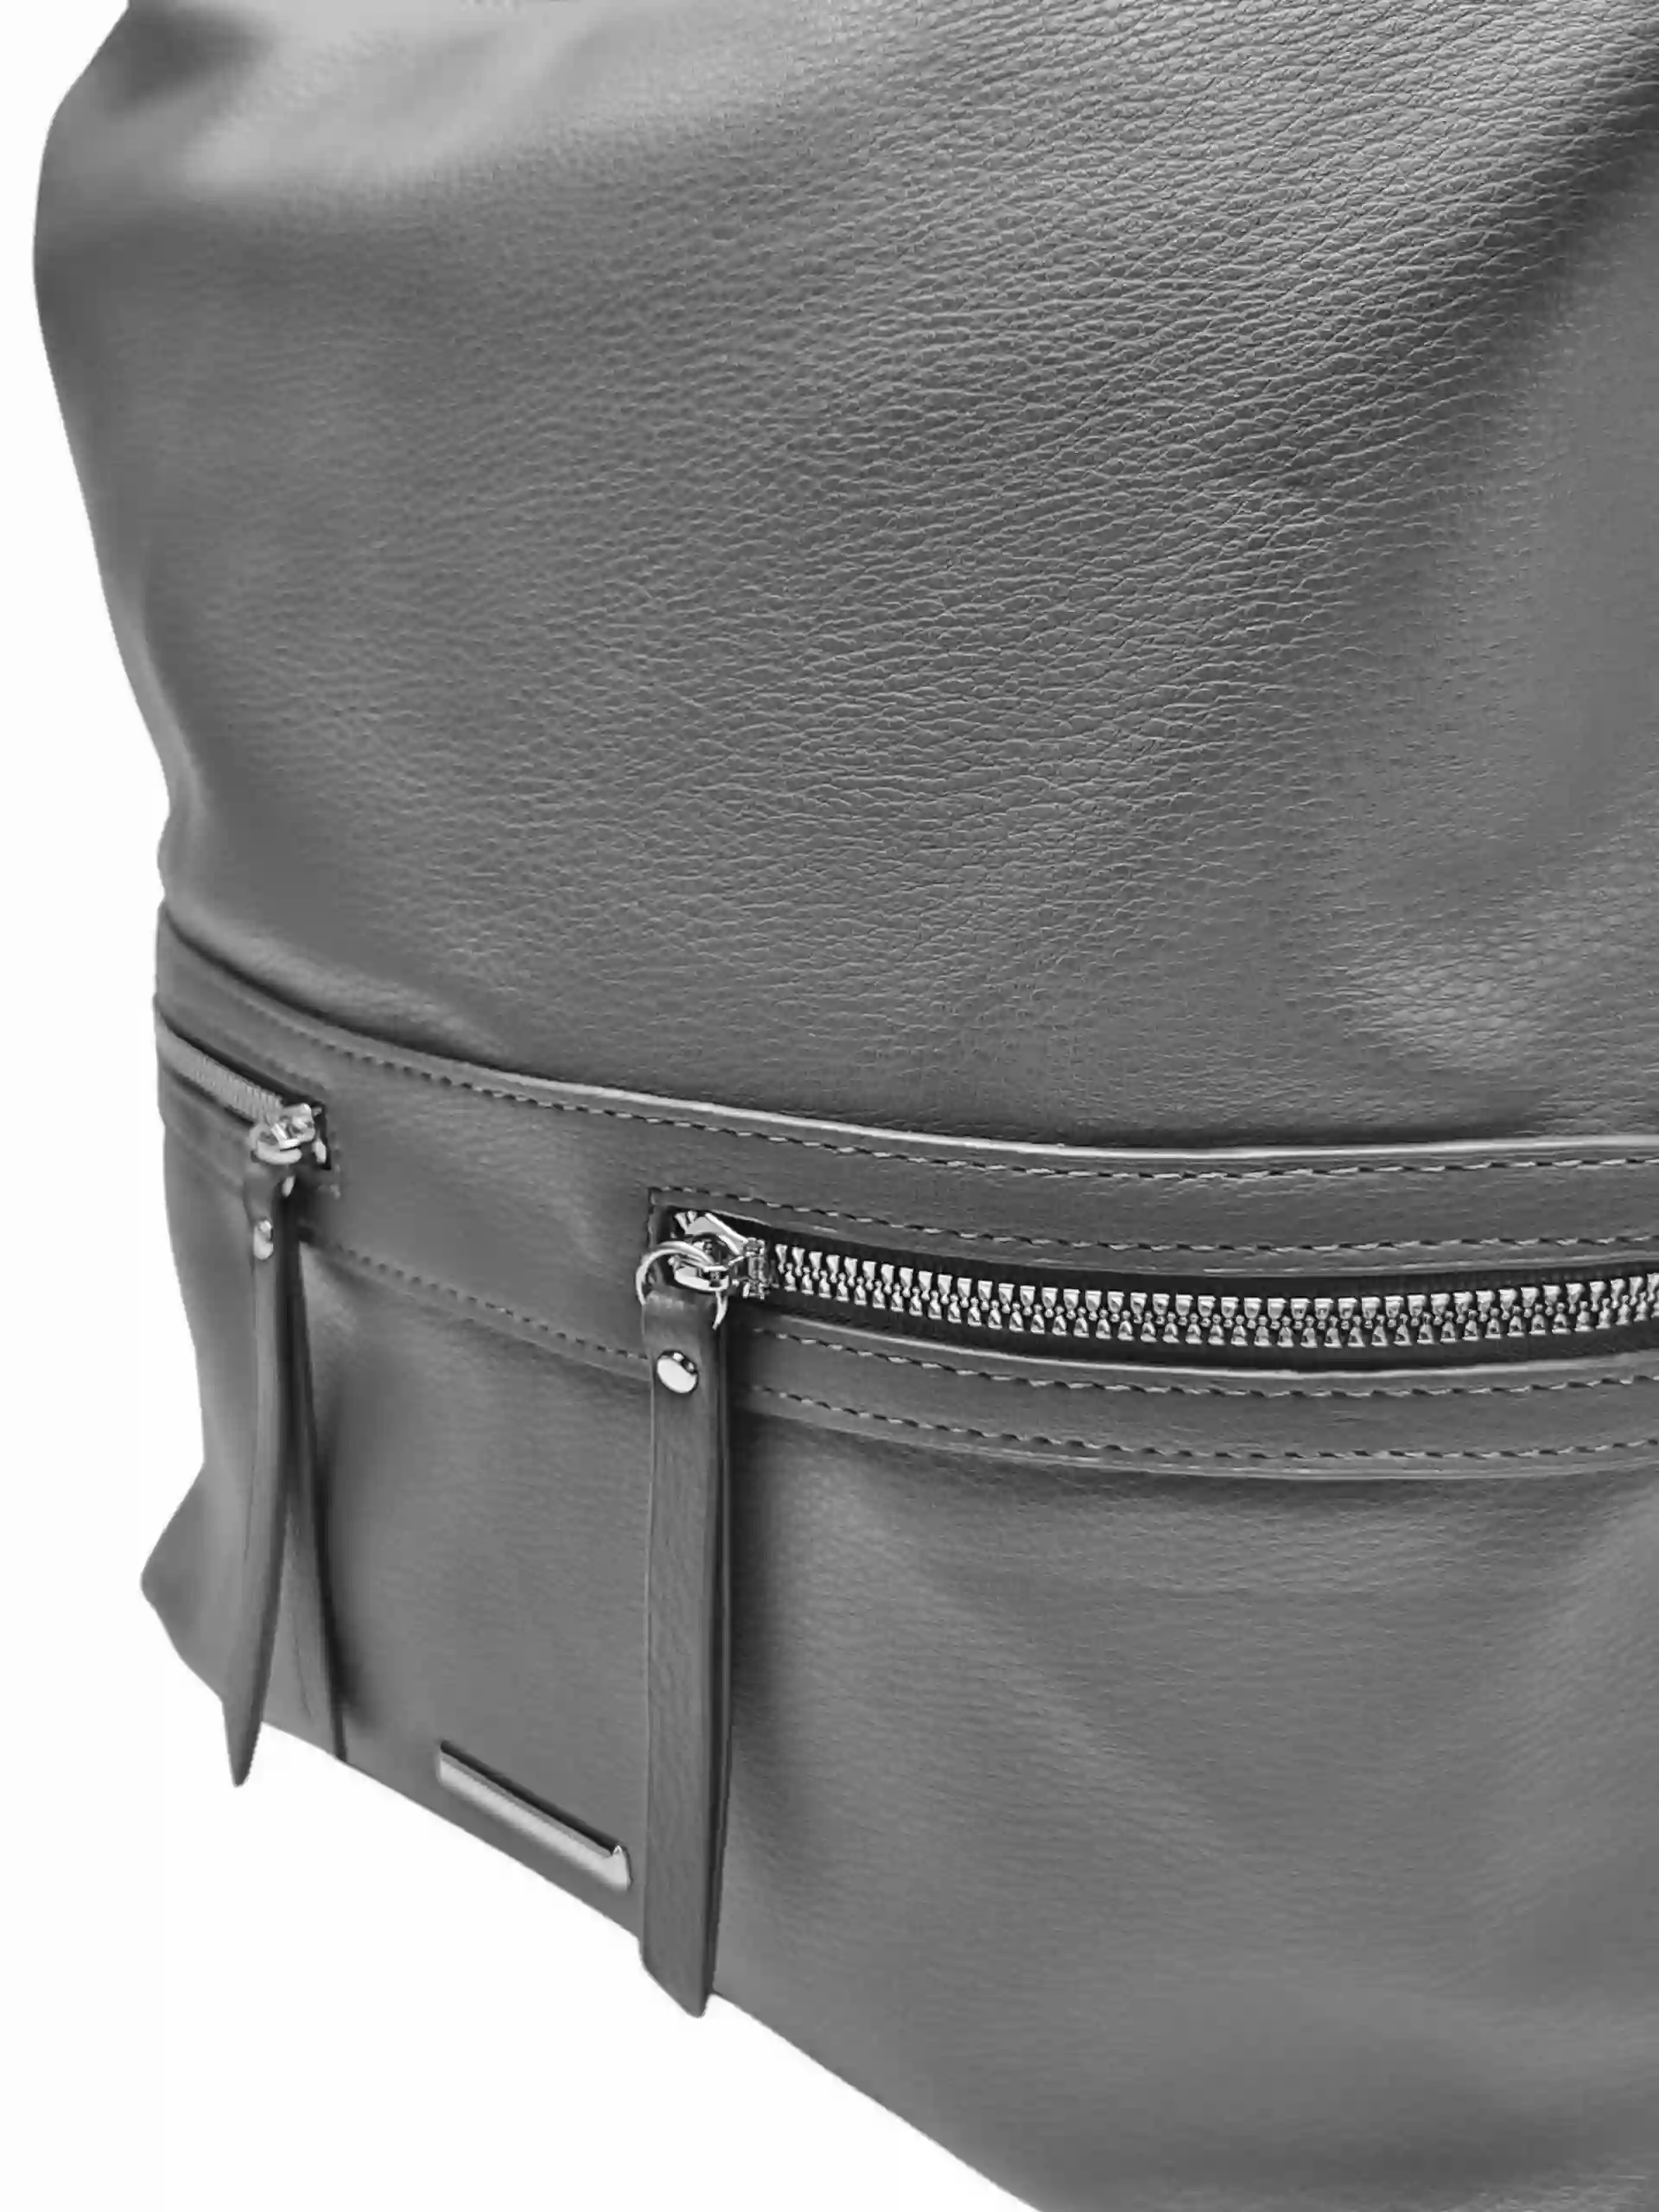 Velká středně šedá kabelka a batoh 2v1, Tapple, X366, detail kabelko-batohu 2v1